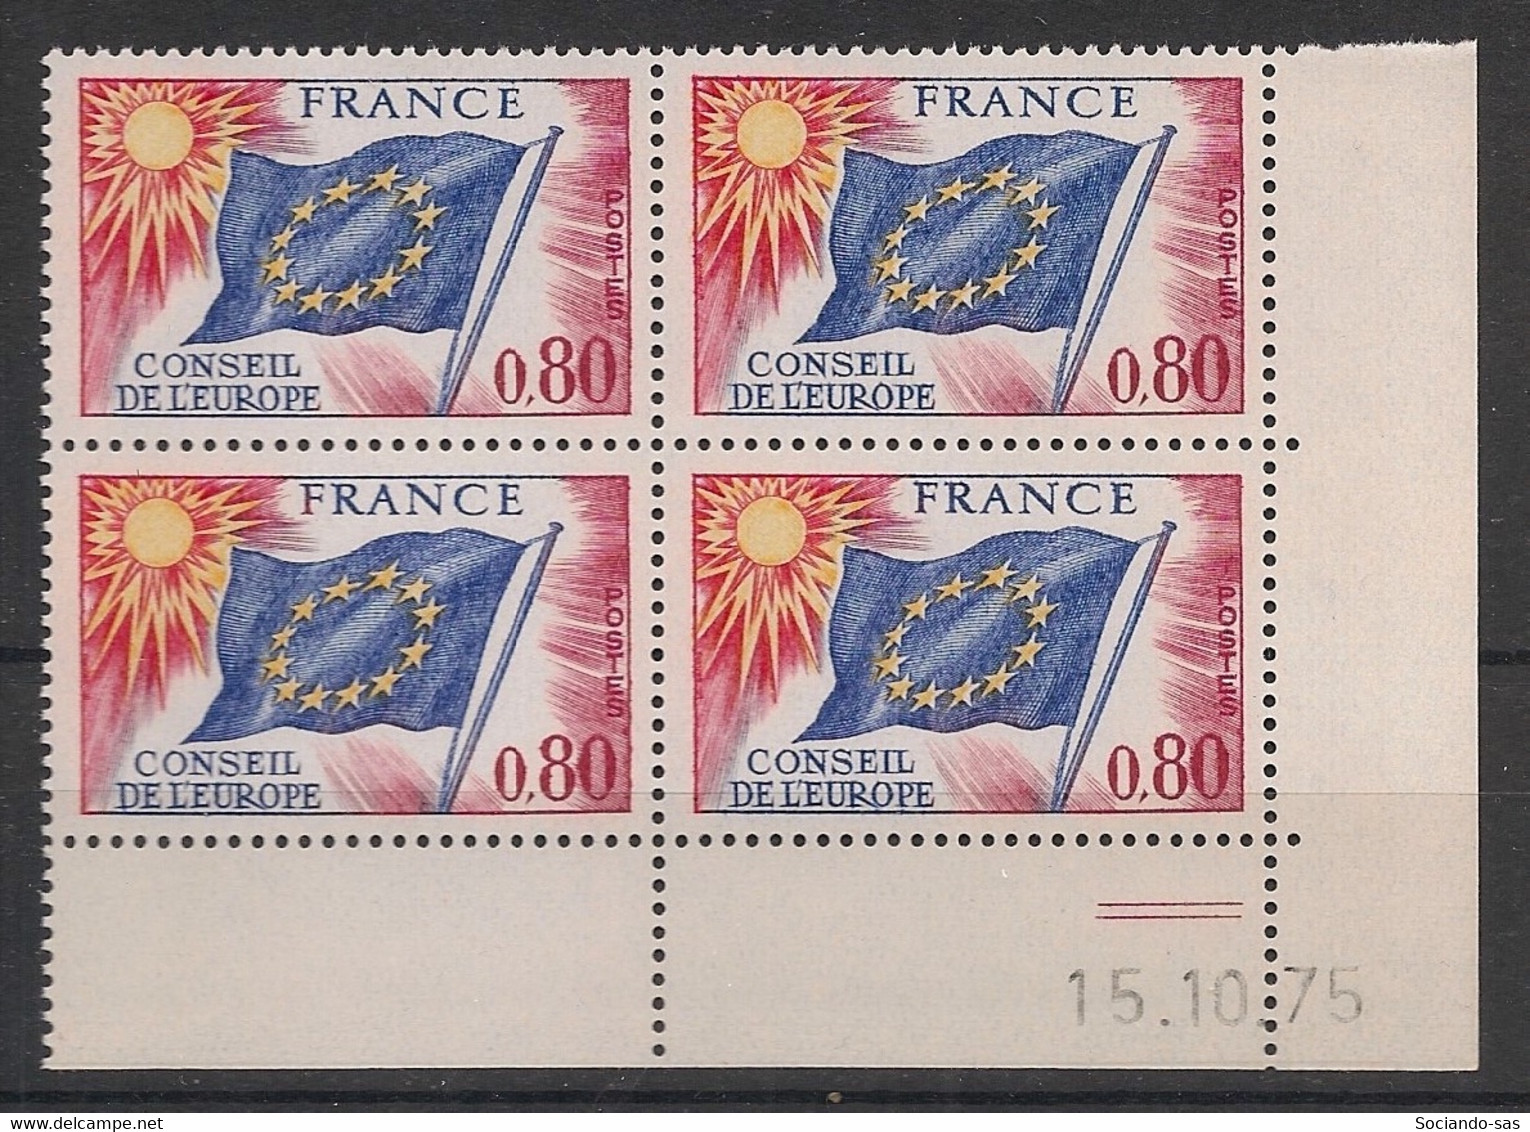 France - 1975 - Service N°Yv. 47 - Bloc De 4 Coin Daté - Neuf Luxe ** / MNH / Postfrisch - Officials